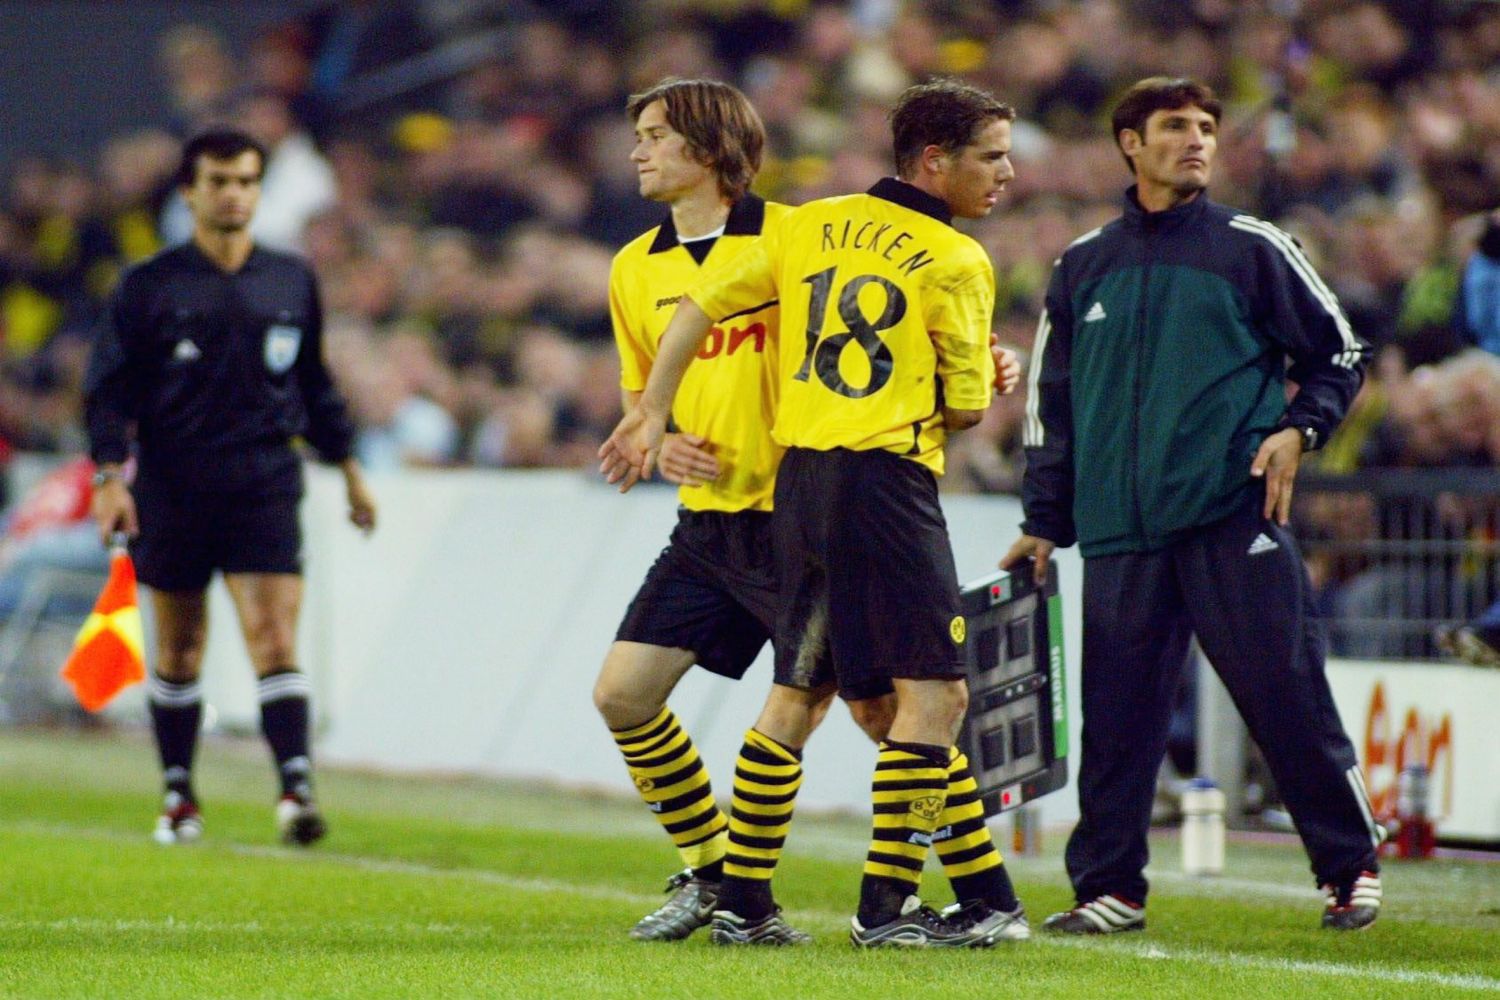 Lars Ricken wird bei Borussia Dortmund ausgewechselt.